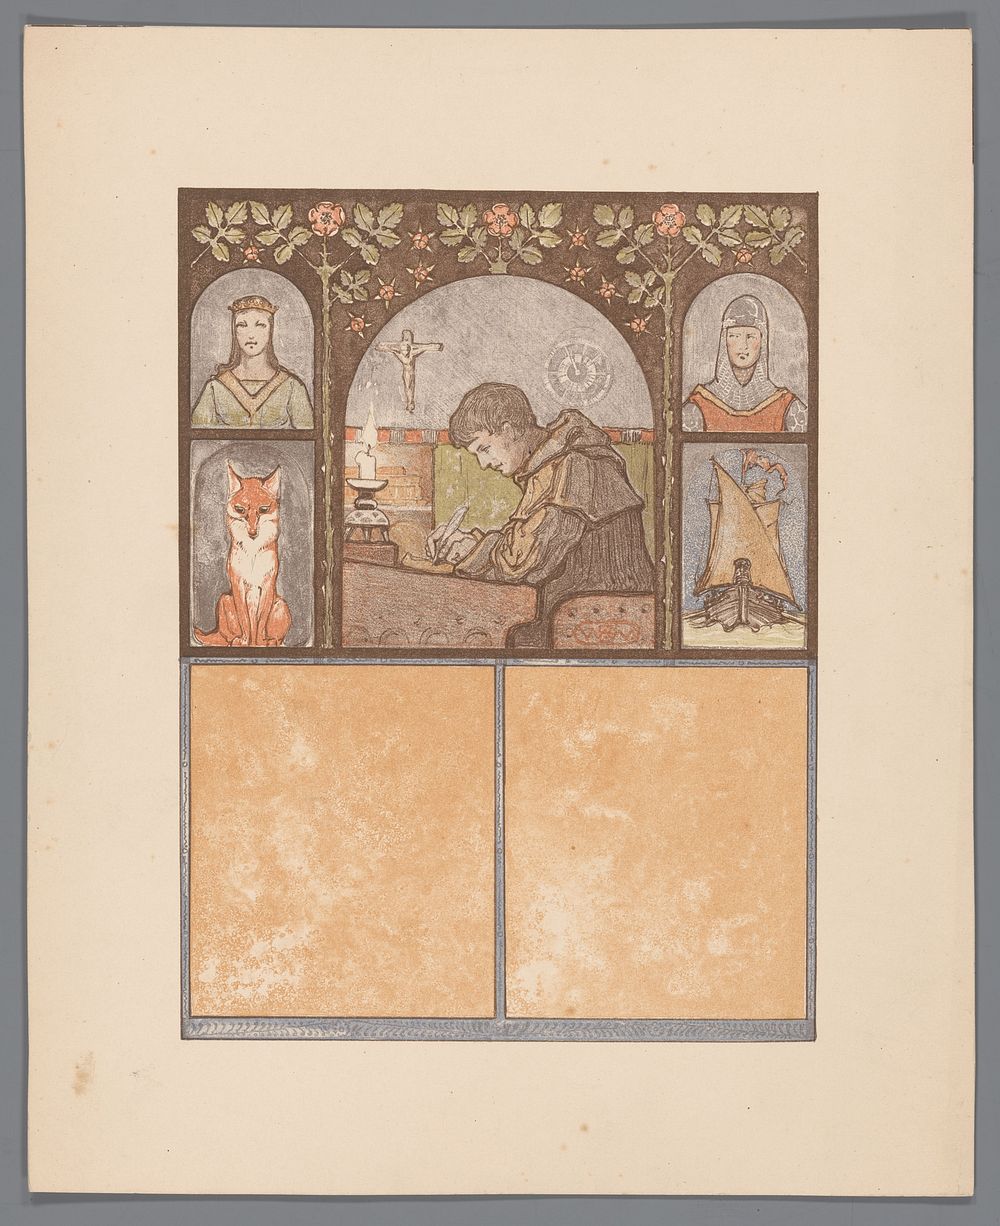 Schrijvende monnik (c. 1910) by Bernard Willem Wierink